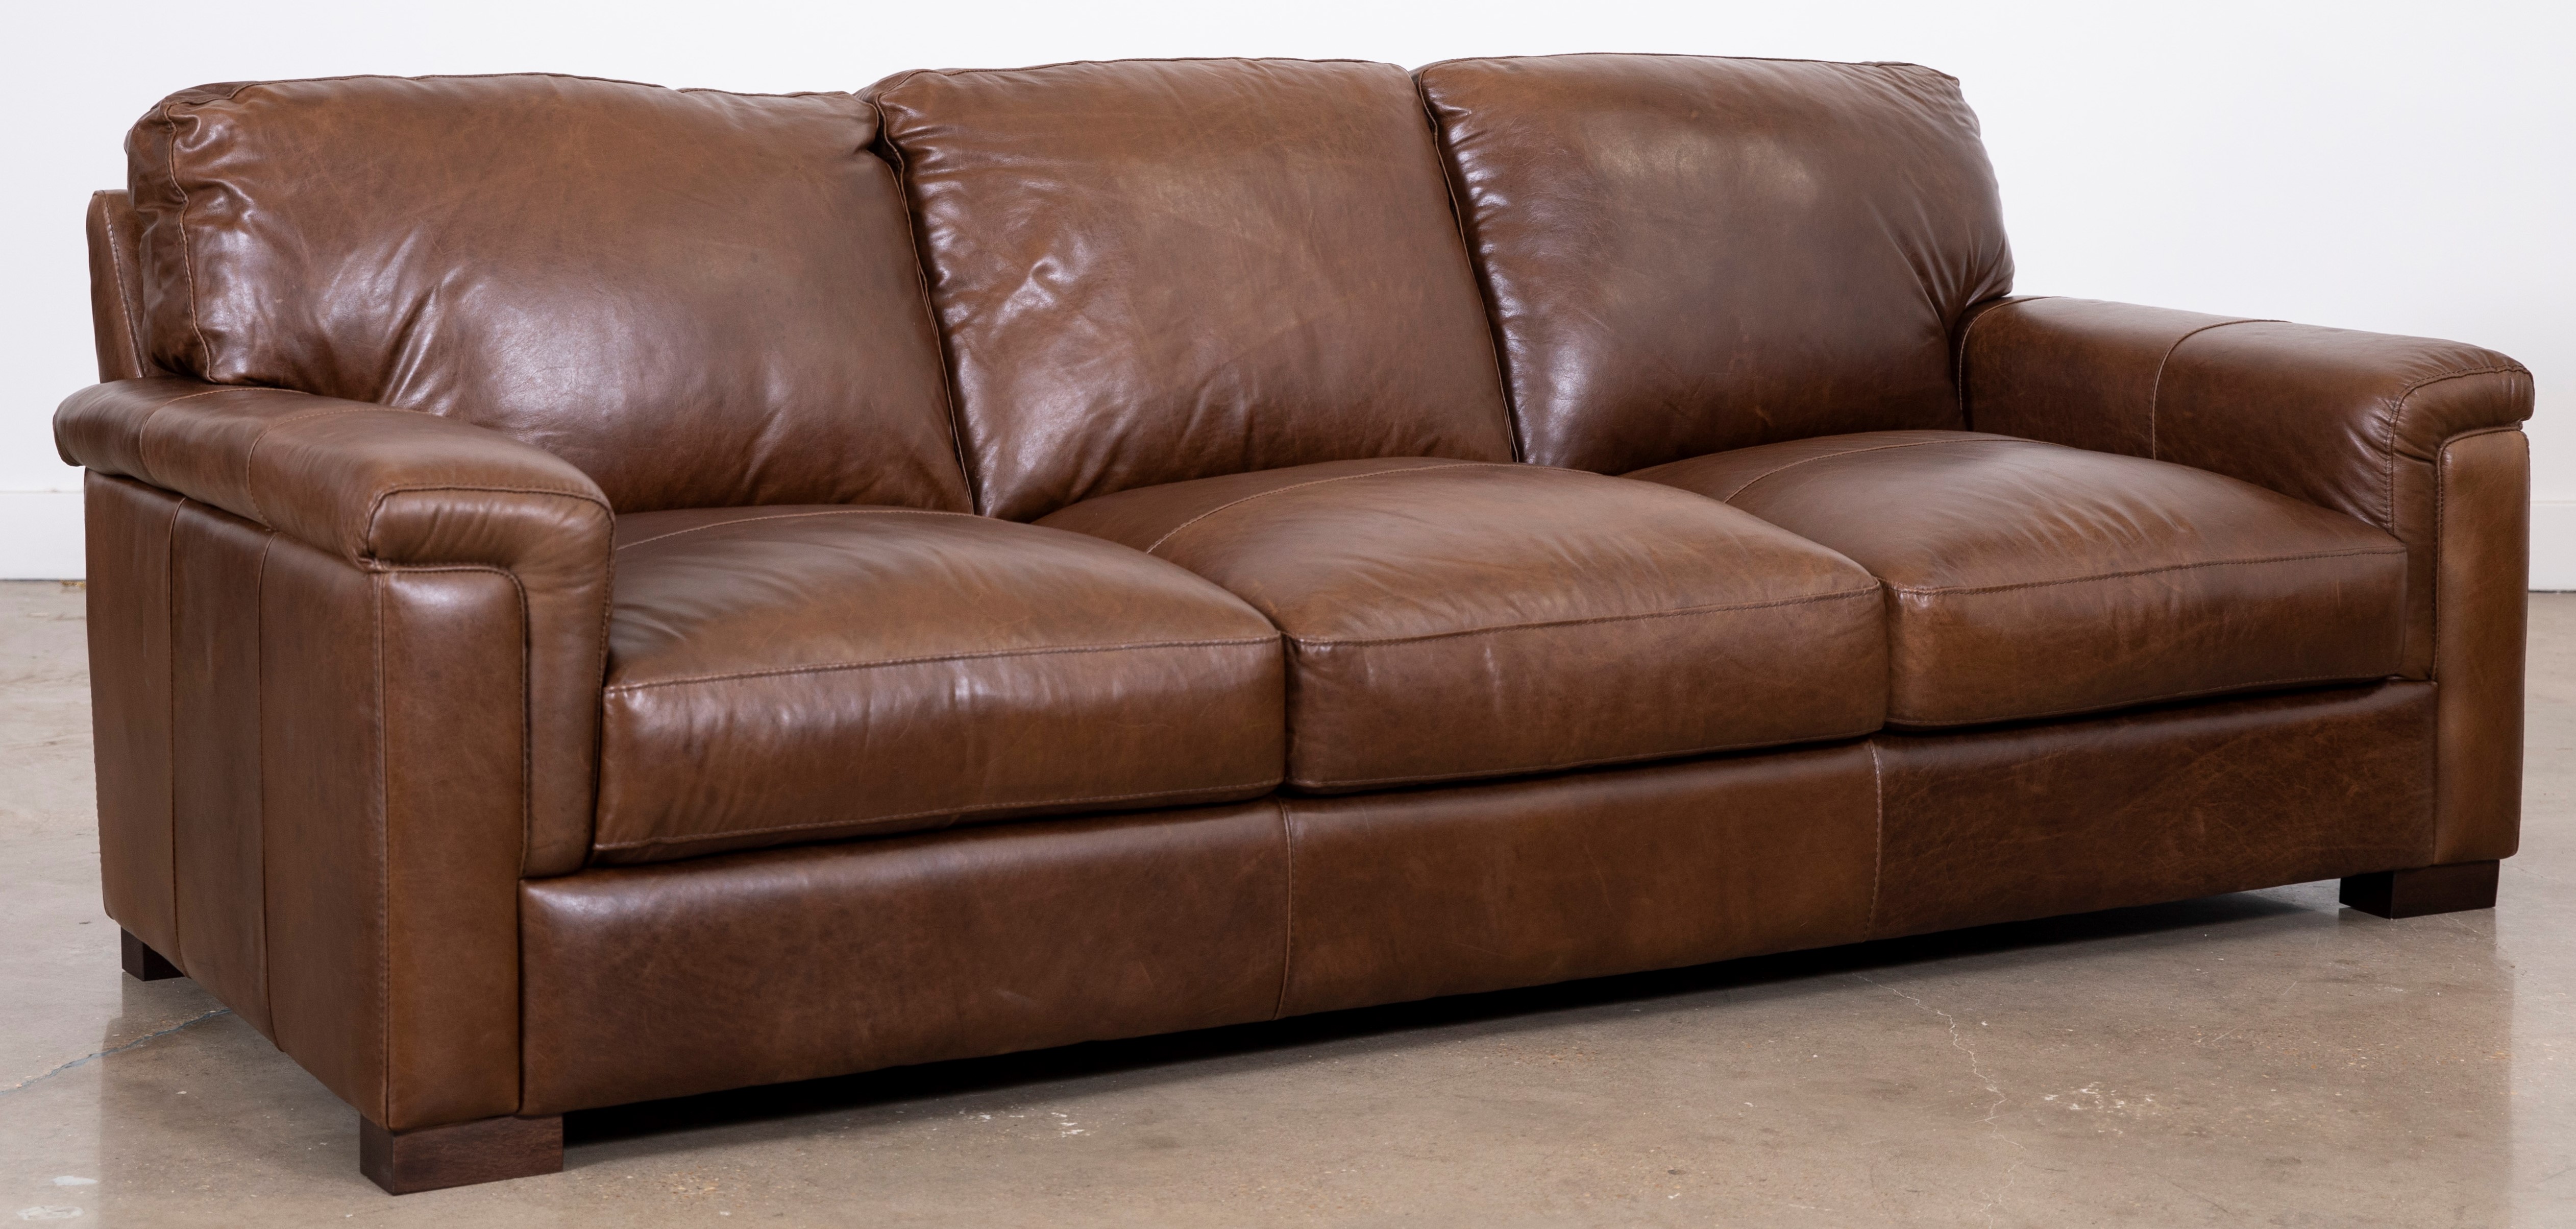 softline leather sofa in splendor chestnut